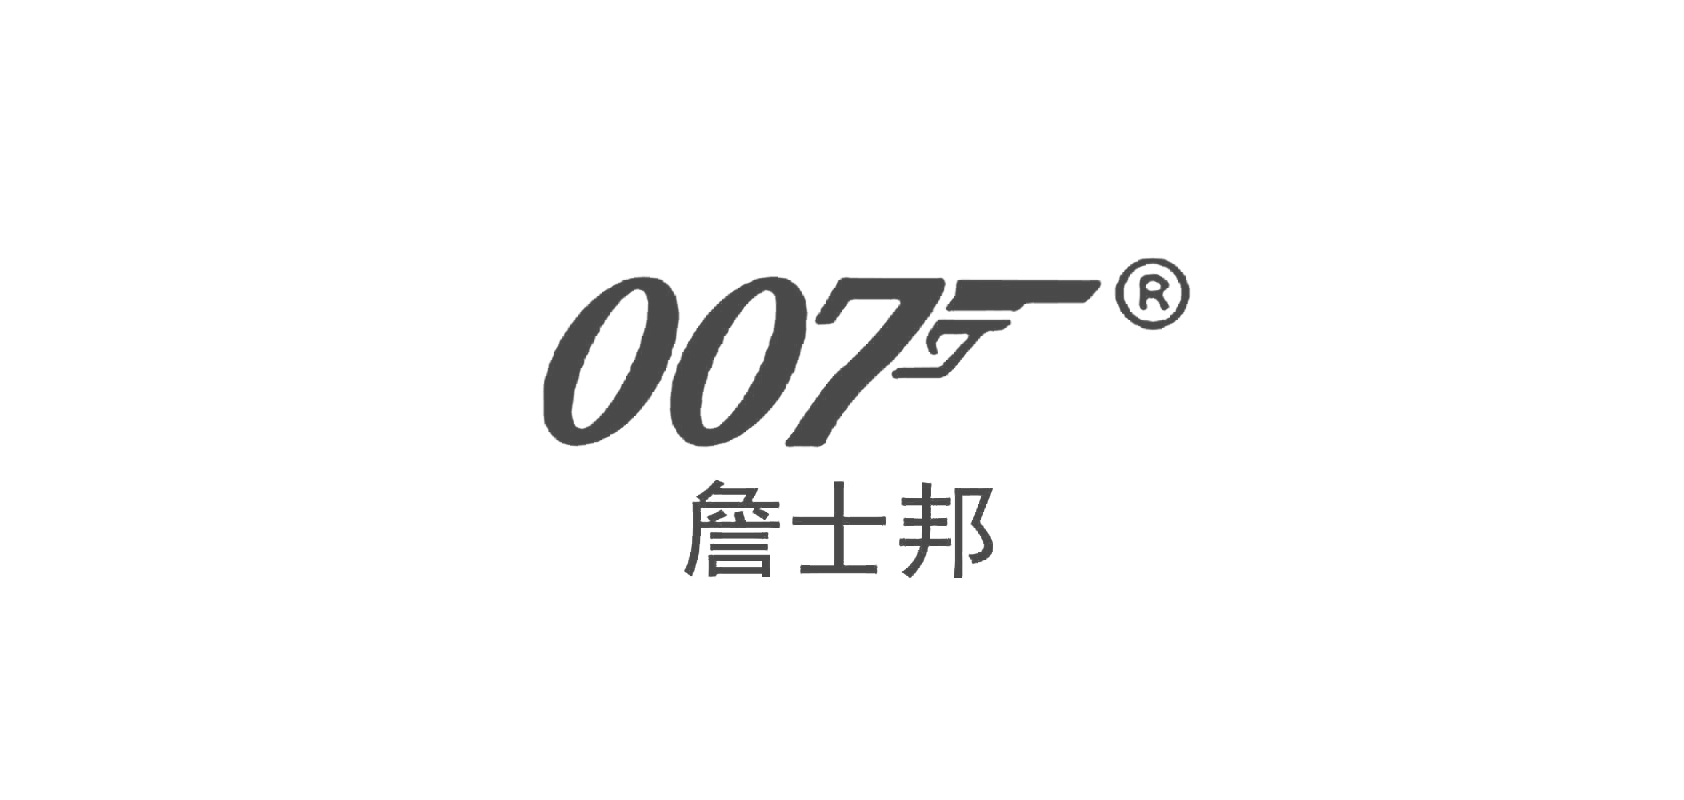 007詹士邦